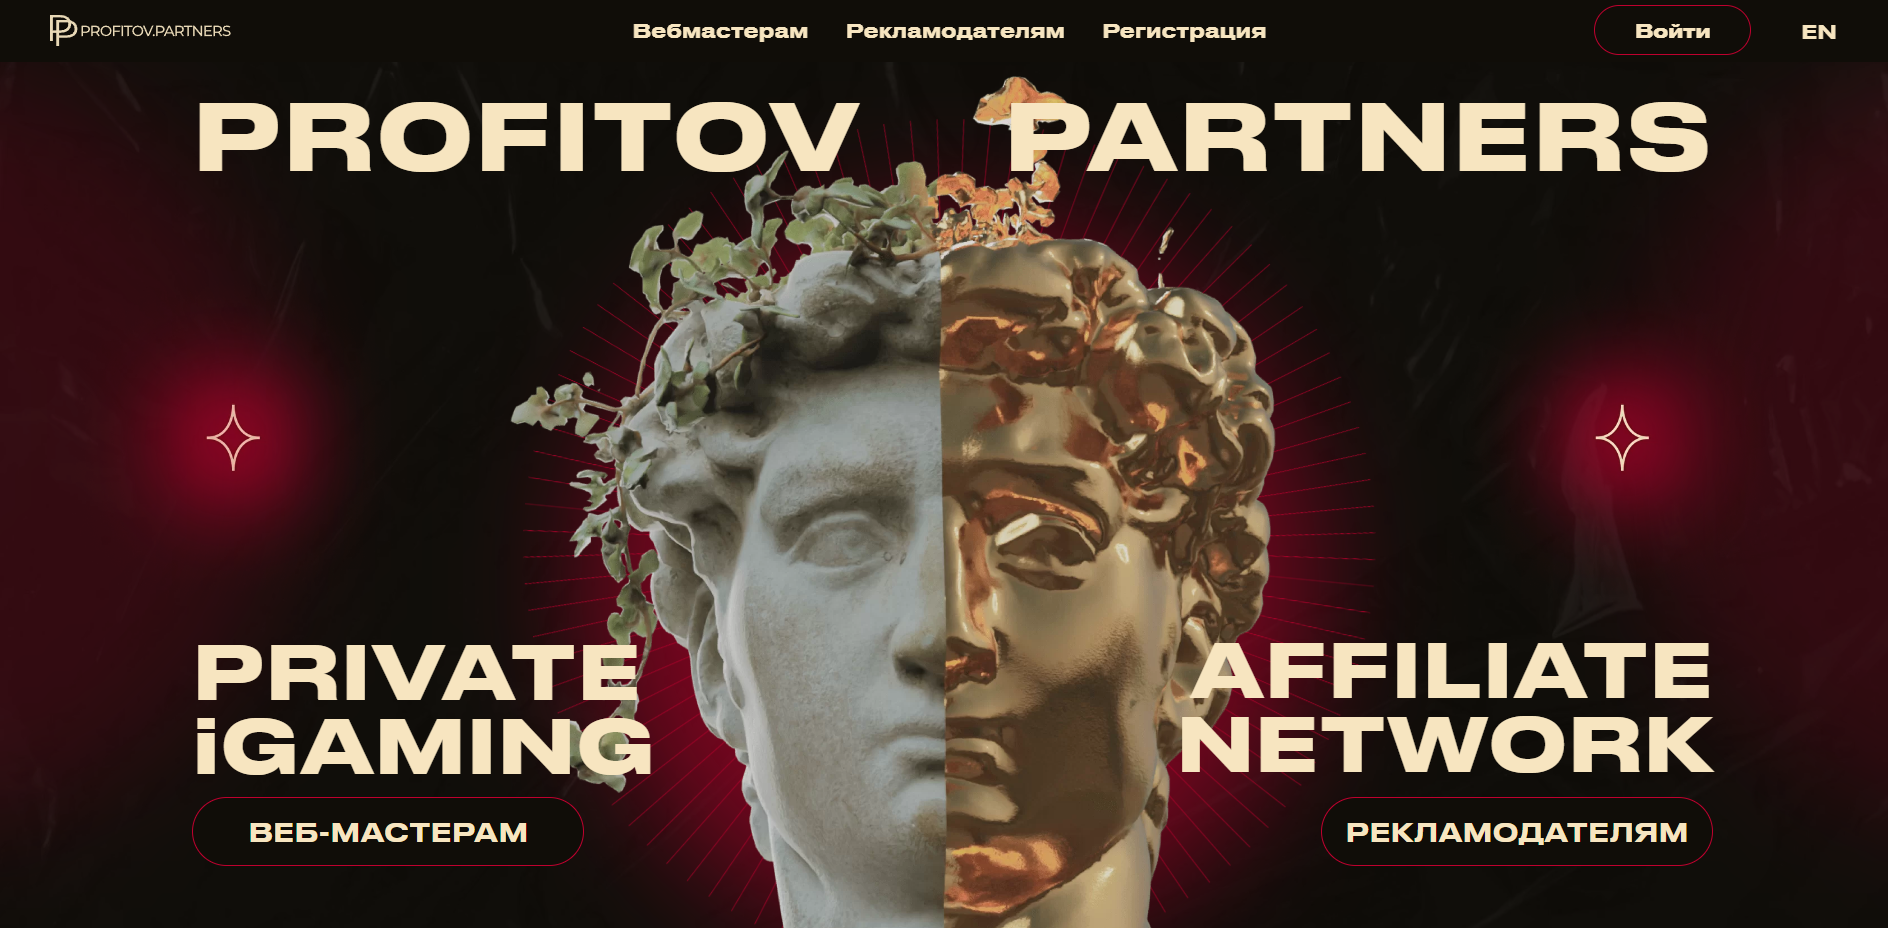 Profitov.Partners — отзывы, обзор партнерской сети